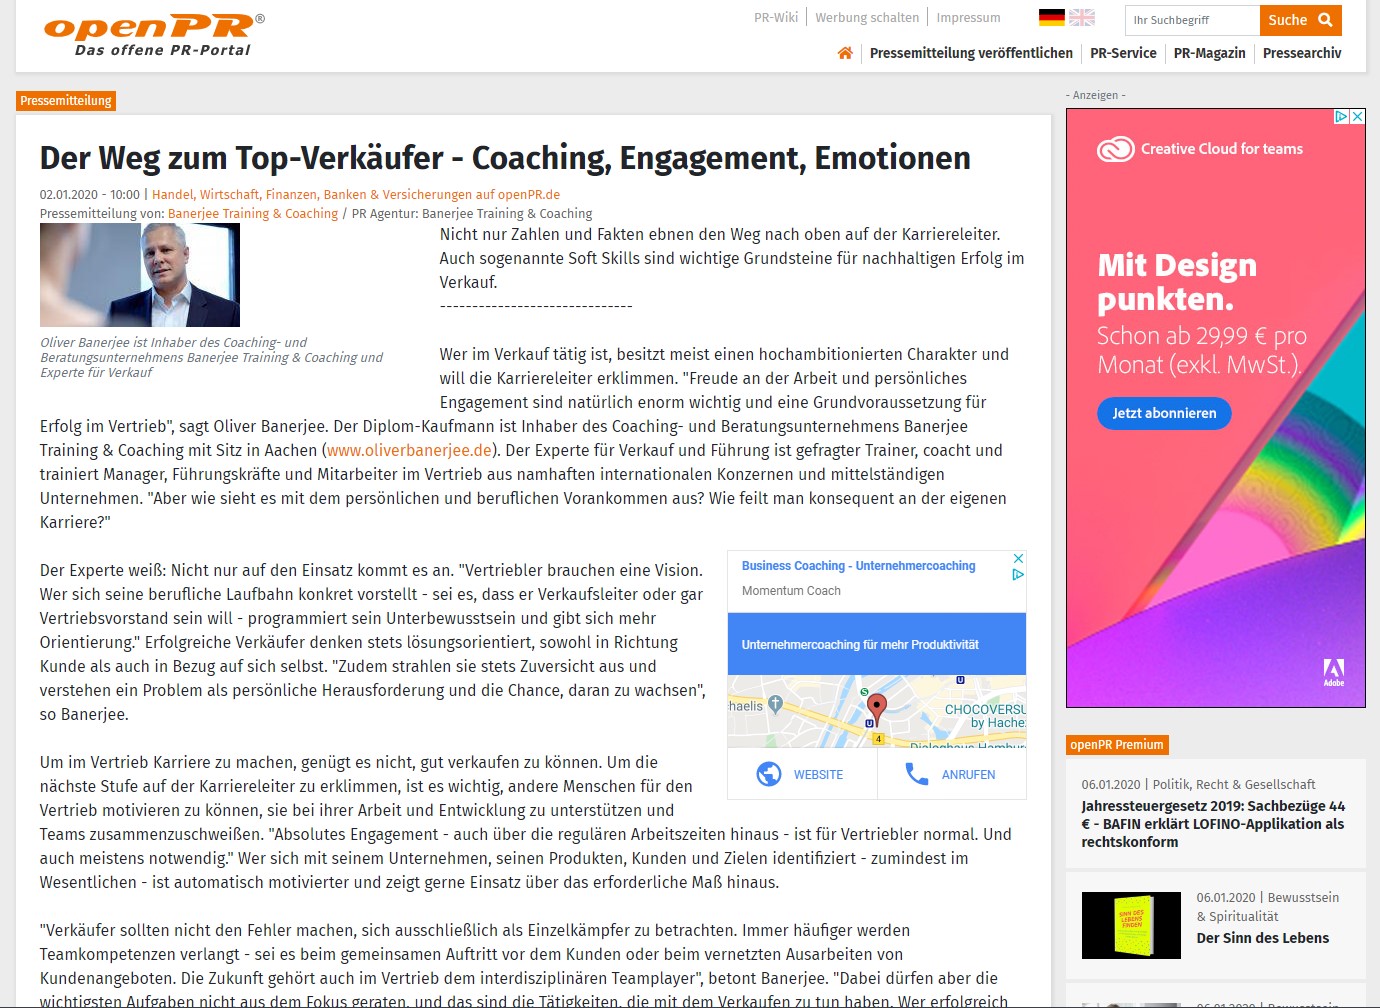 Verkaufstraining Aachen: Mit einem Coaching und Verkaufstraining zum Top-Verkäufer